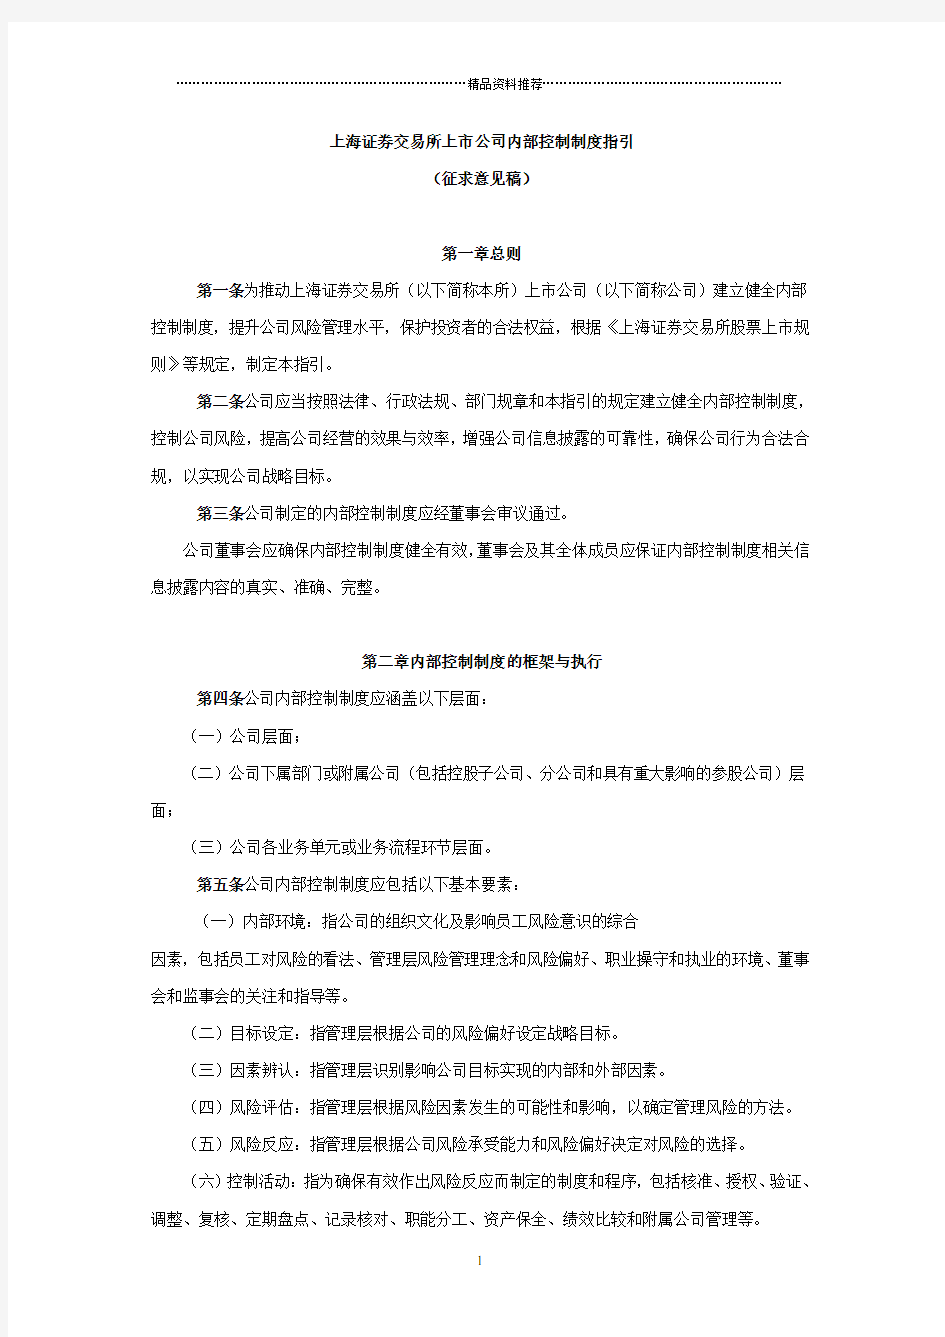 上海证券交易所上市公司内部控制制度指引